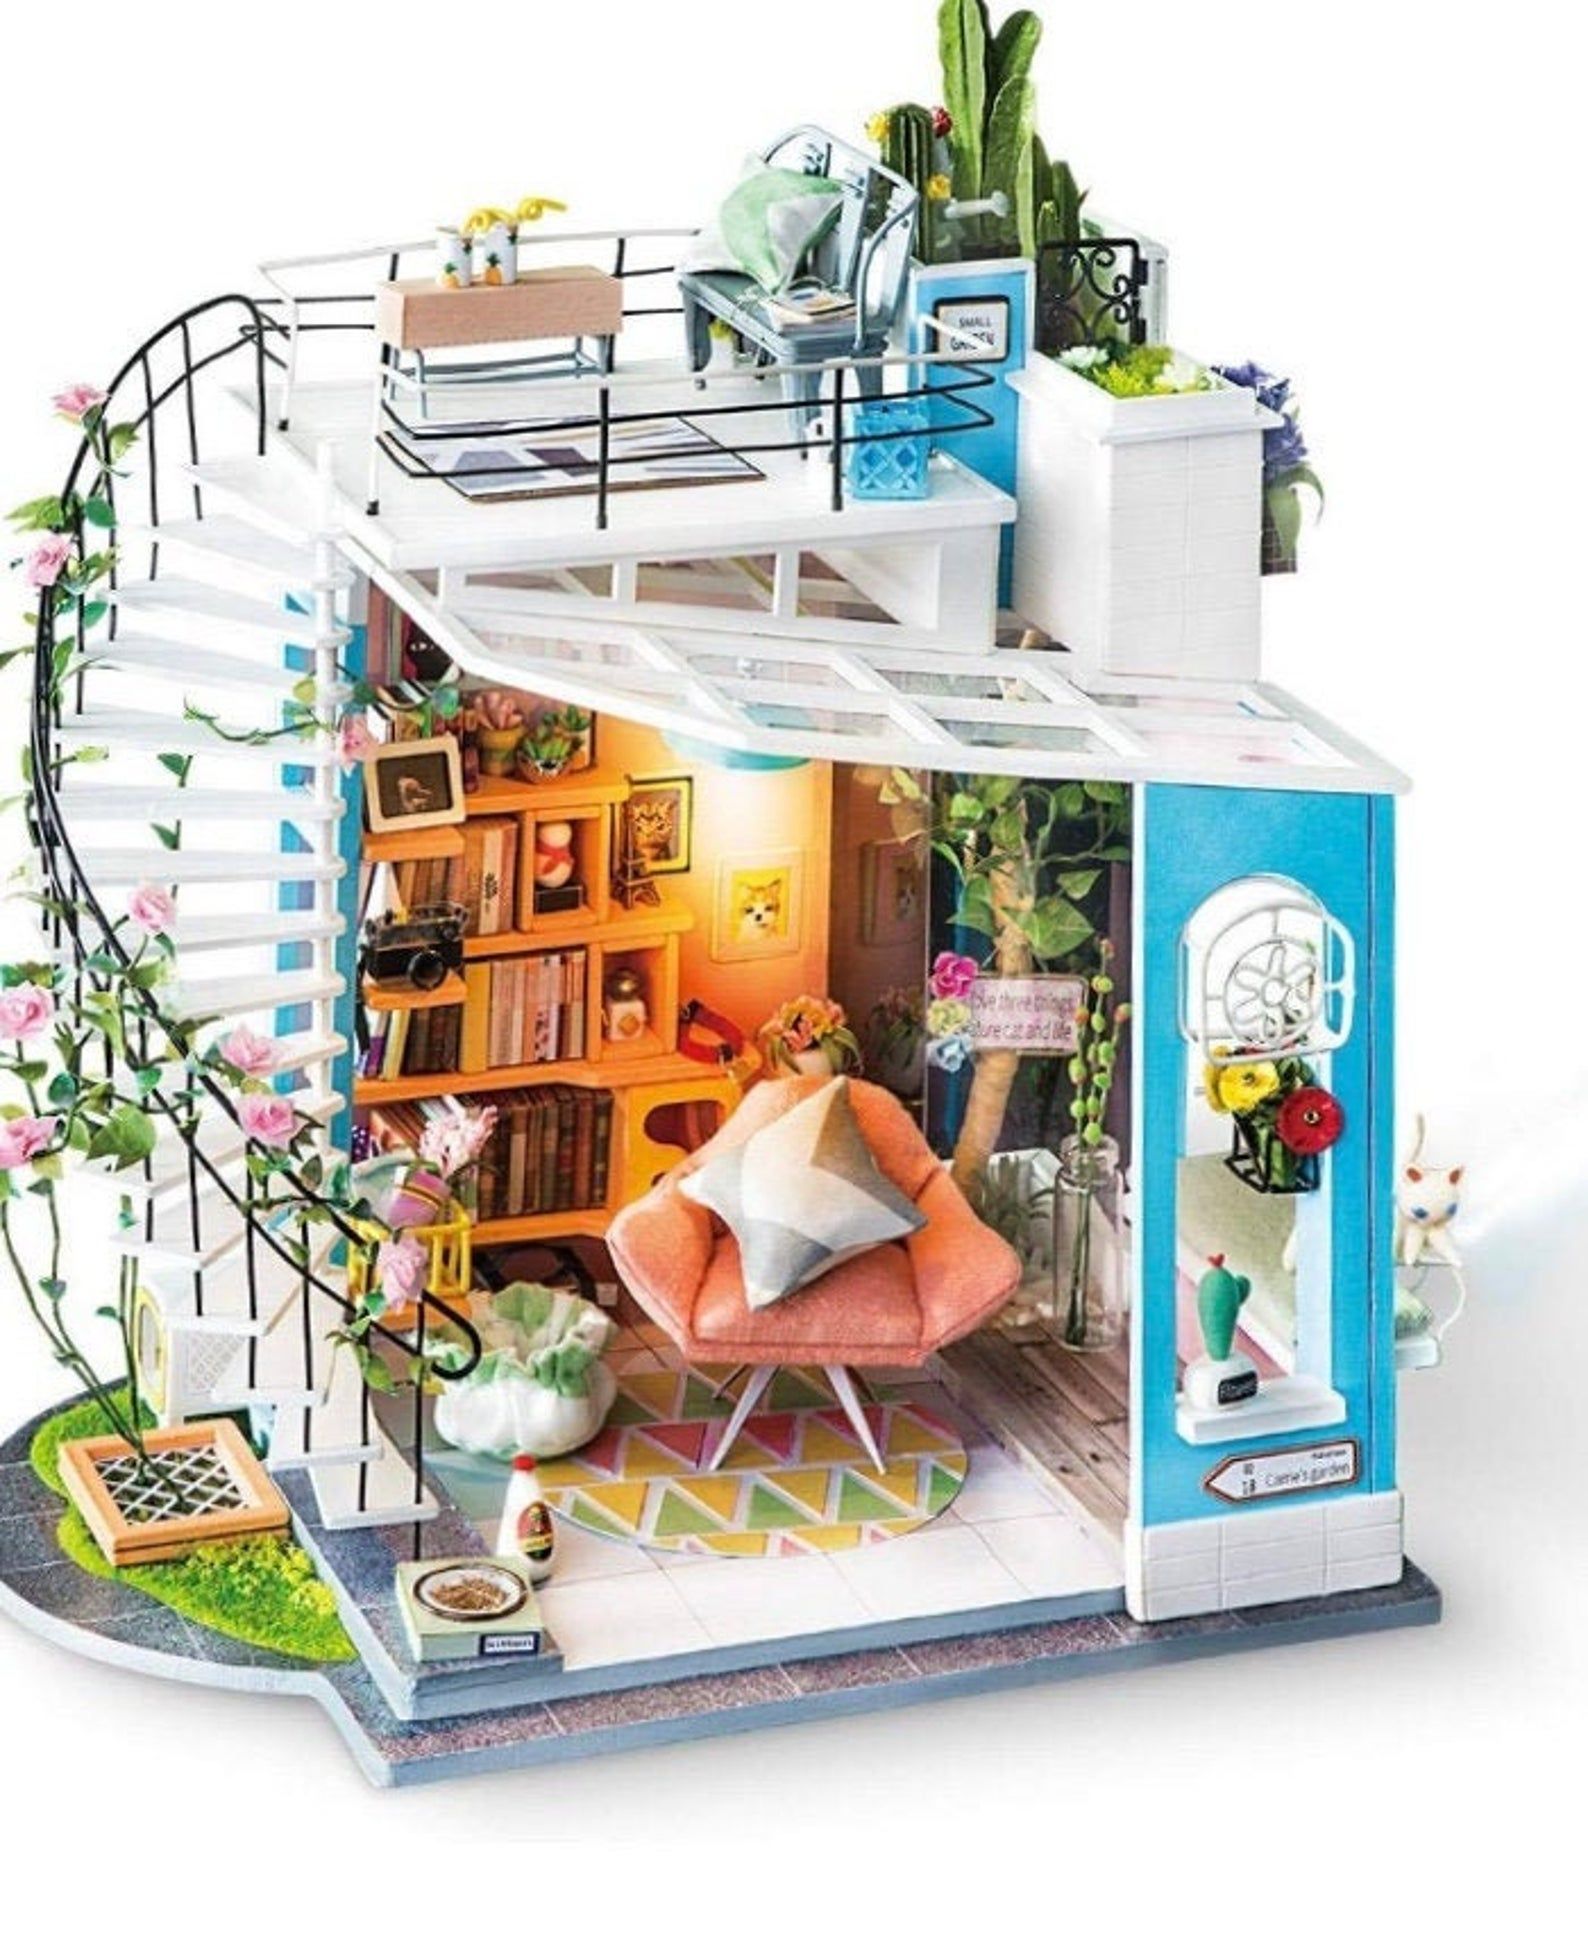 Dollhouse living room with bookshelves